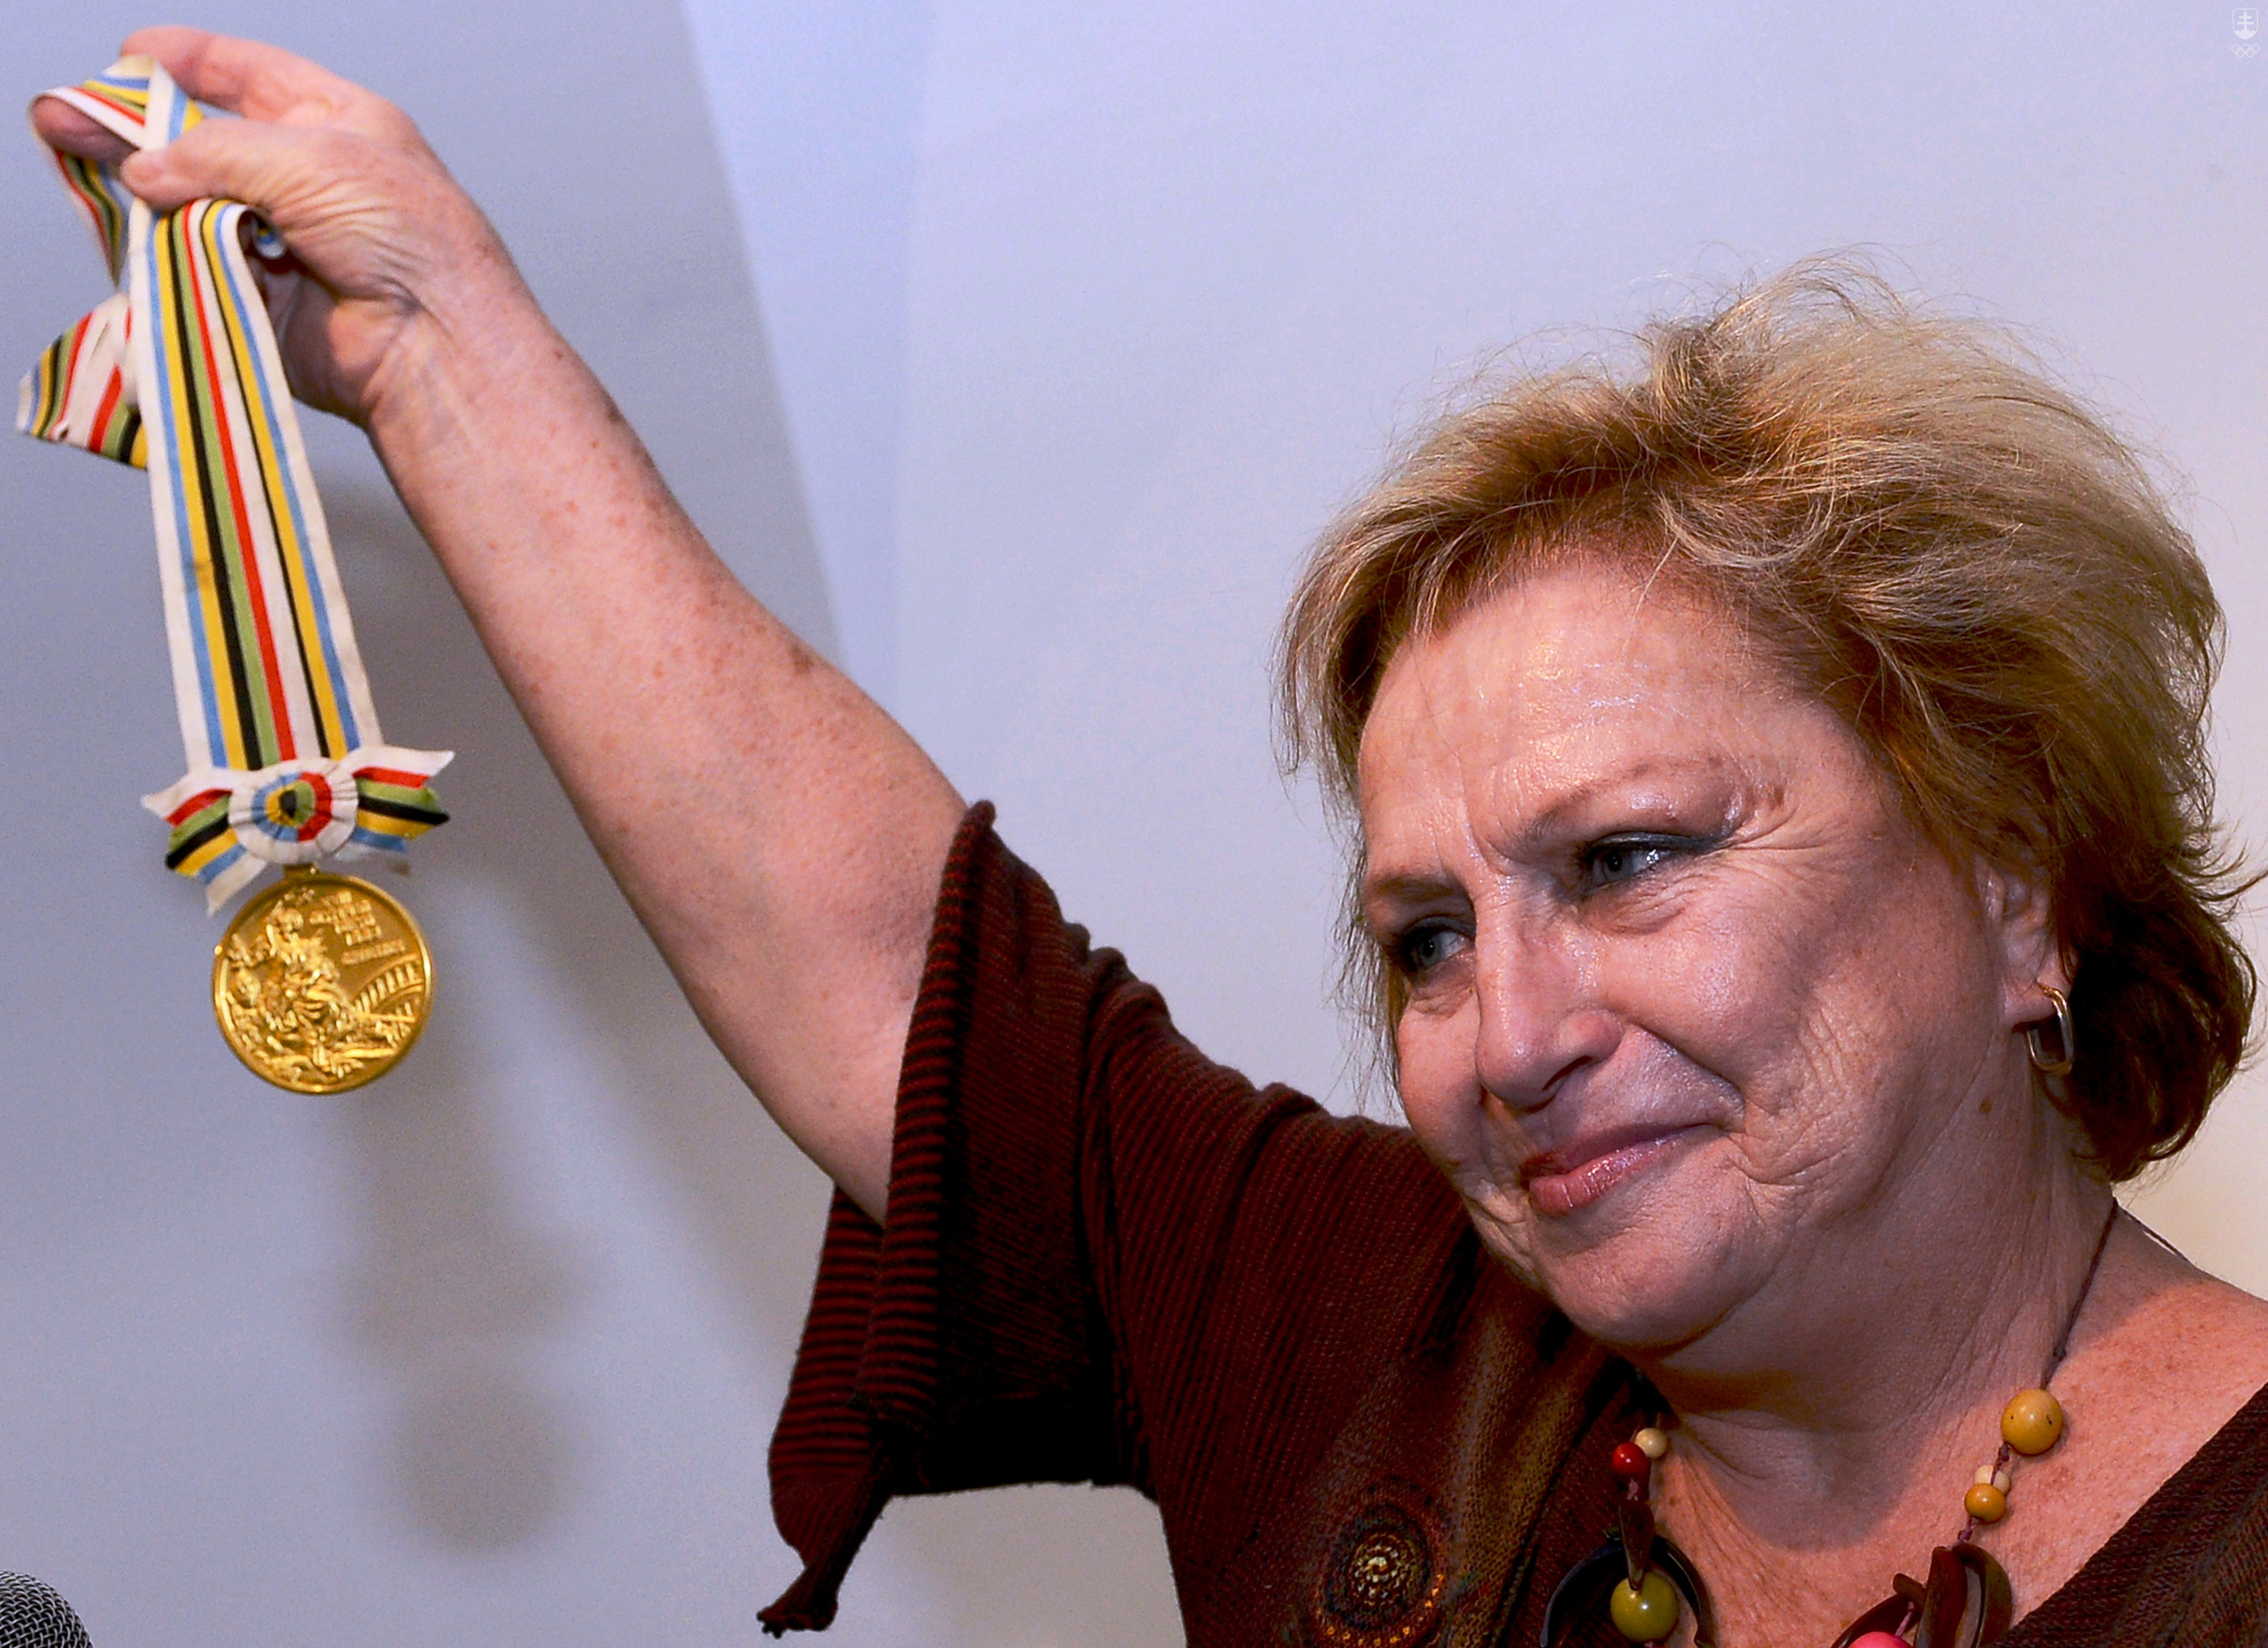 Věra Čáslavská s jednou zo svojich zlatých medailí z OH 1964 v Tokiu, ktorú venovala Slovensku. K unikátnemu daru patrili aj jedna zlatá medaila z OH 1968 v Mexico City.